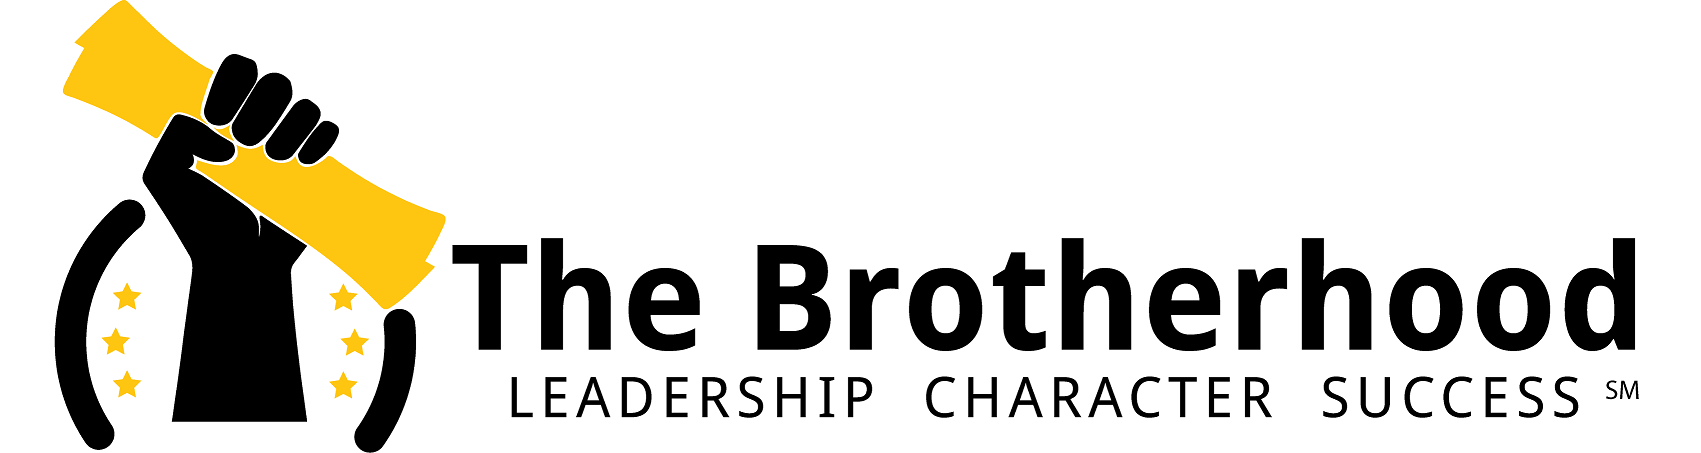 thebrotherhood-co Logo